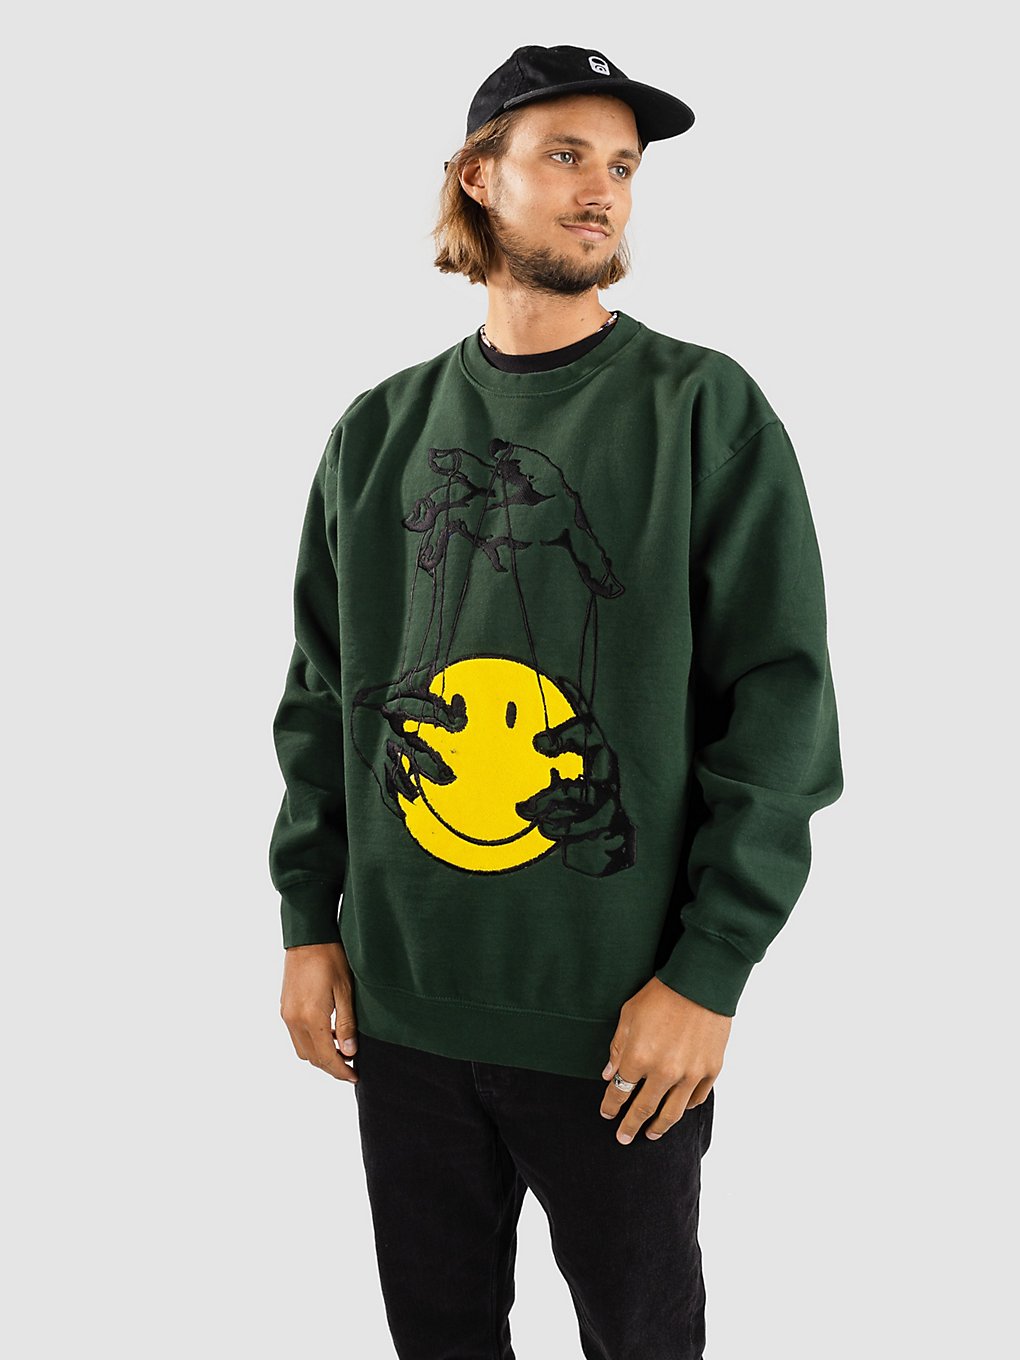 Market Smiley Marionette Sweater evergreen kaufen